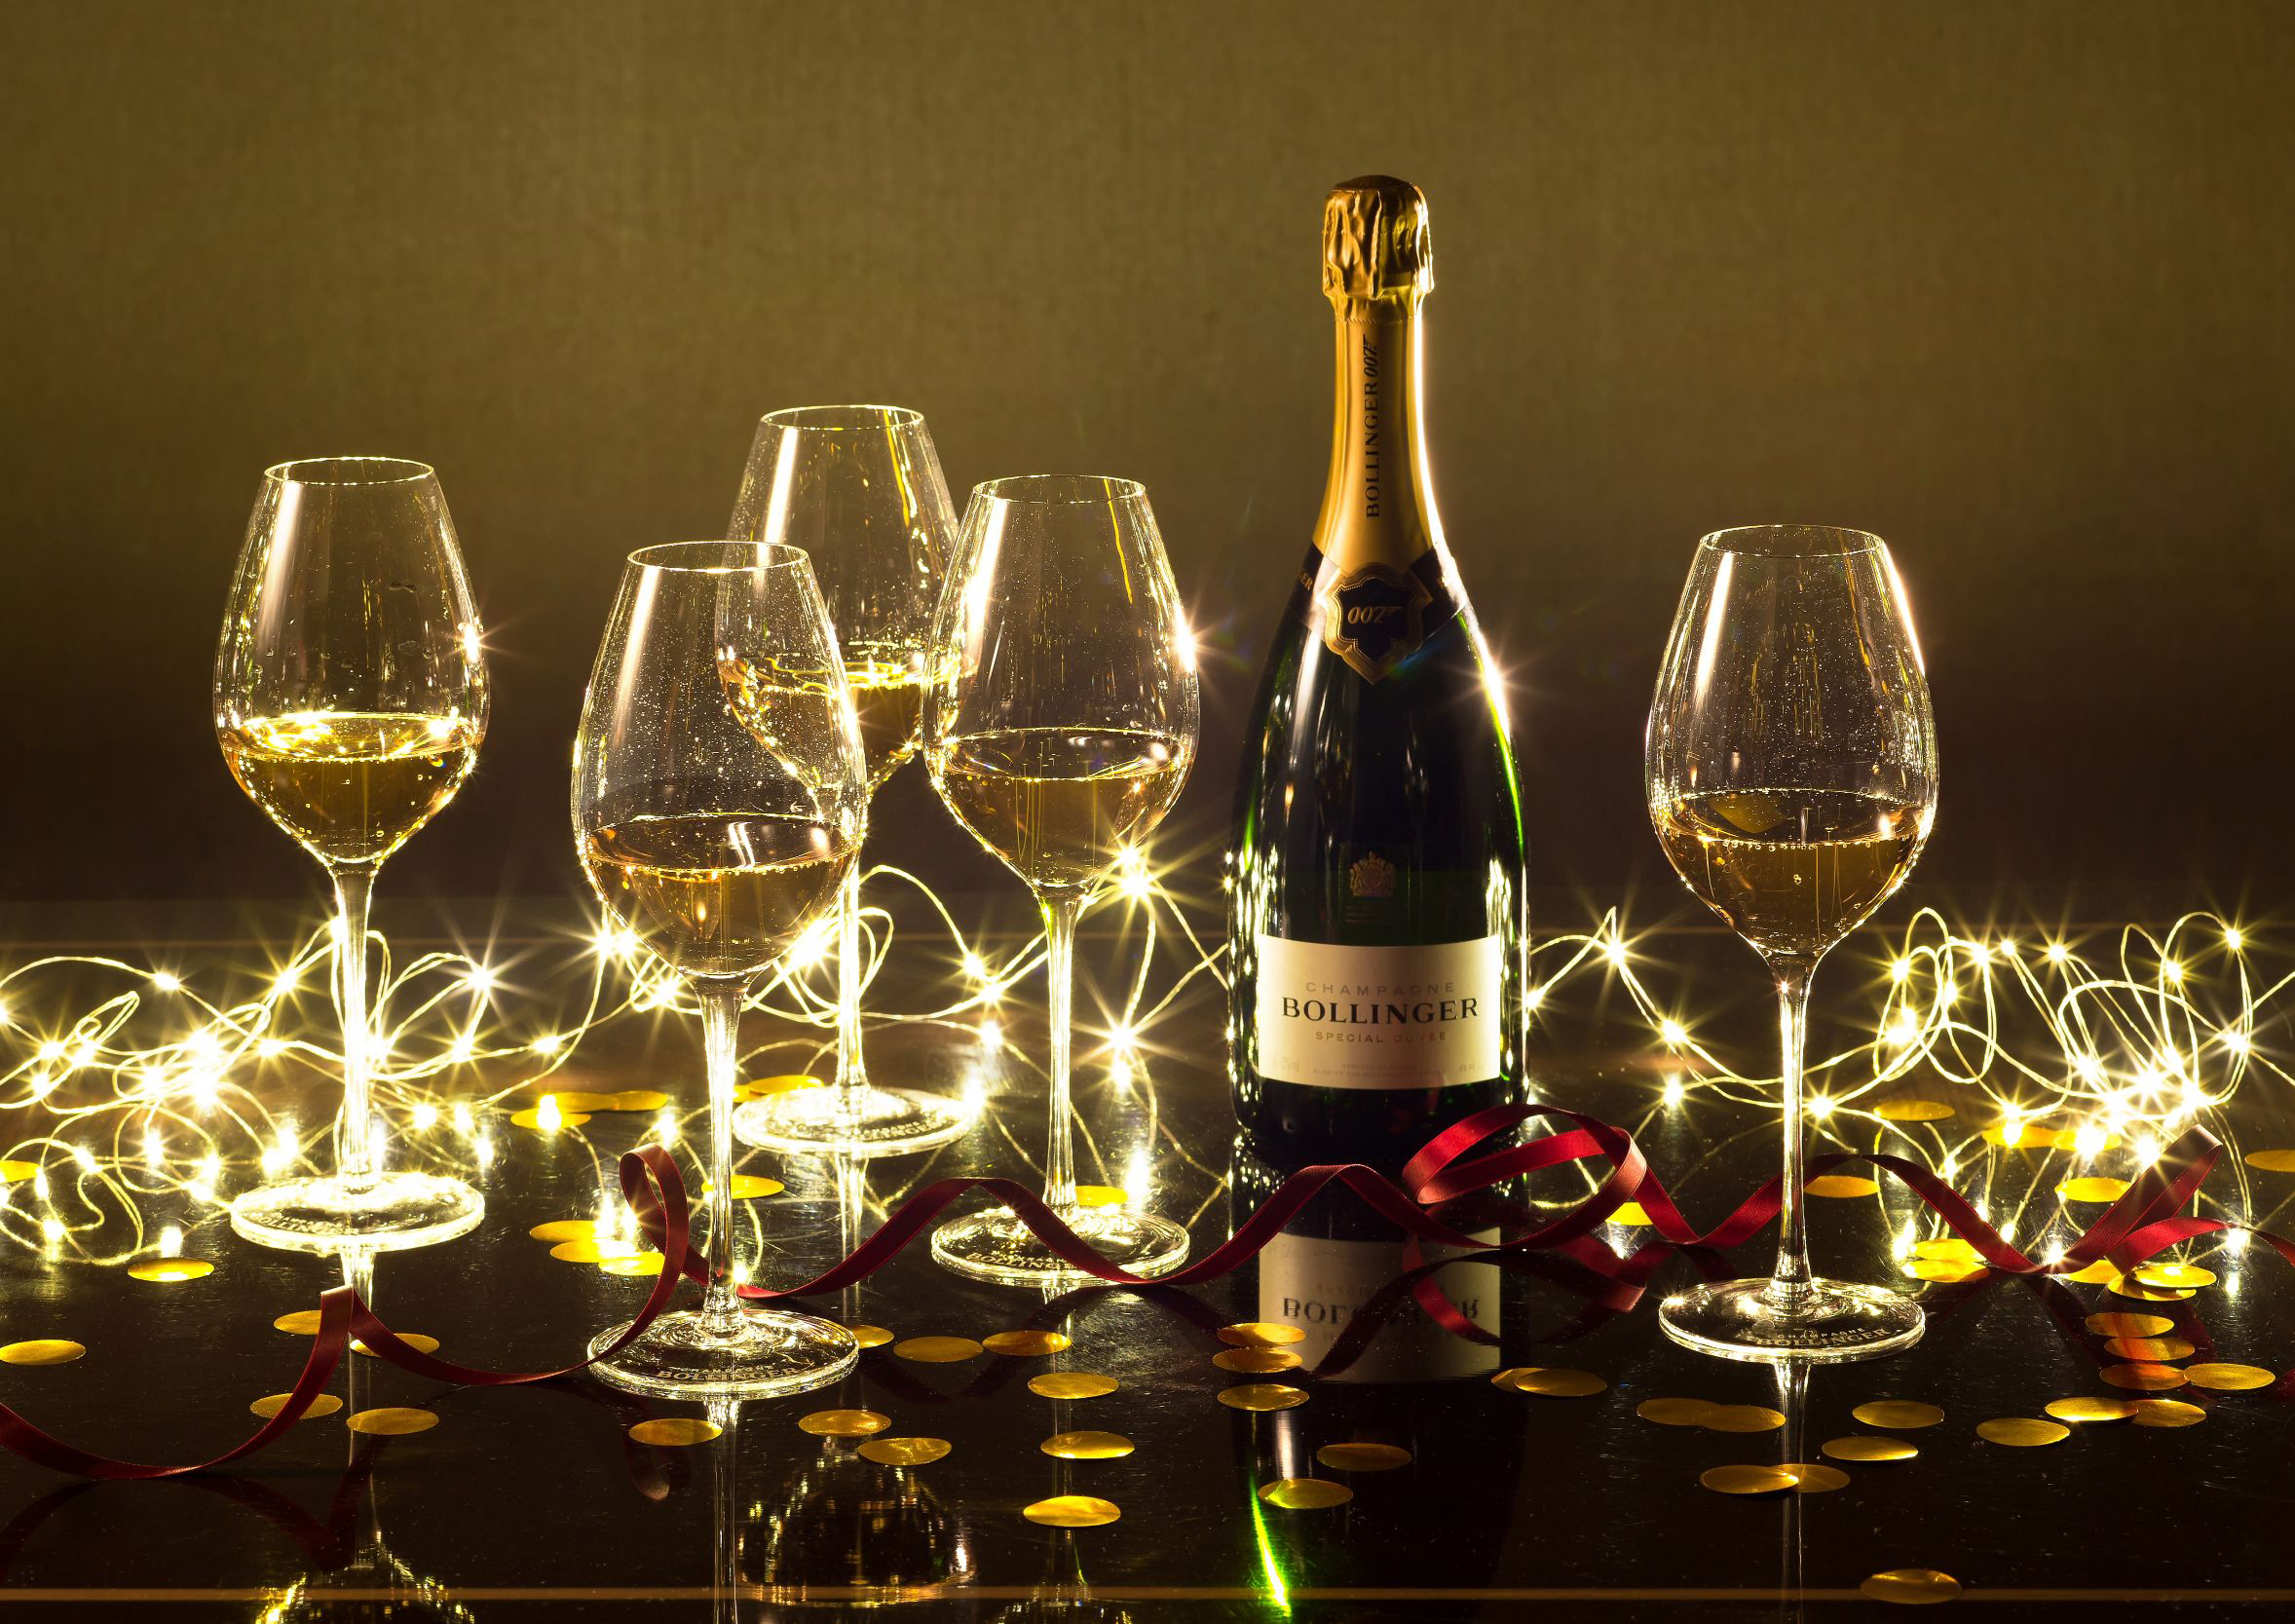 ジェームズ・ボンドが愛したシャンパン「ボランジェ」とコラボしたパーティーで華やかな年明けを (2020年12月10日) - エキサイトニュース